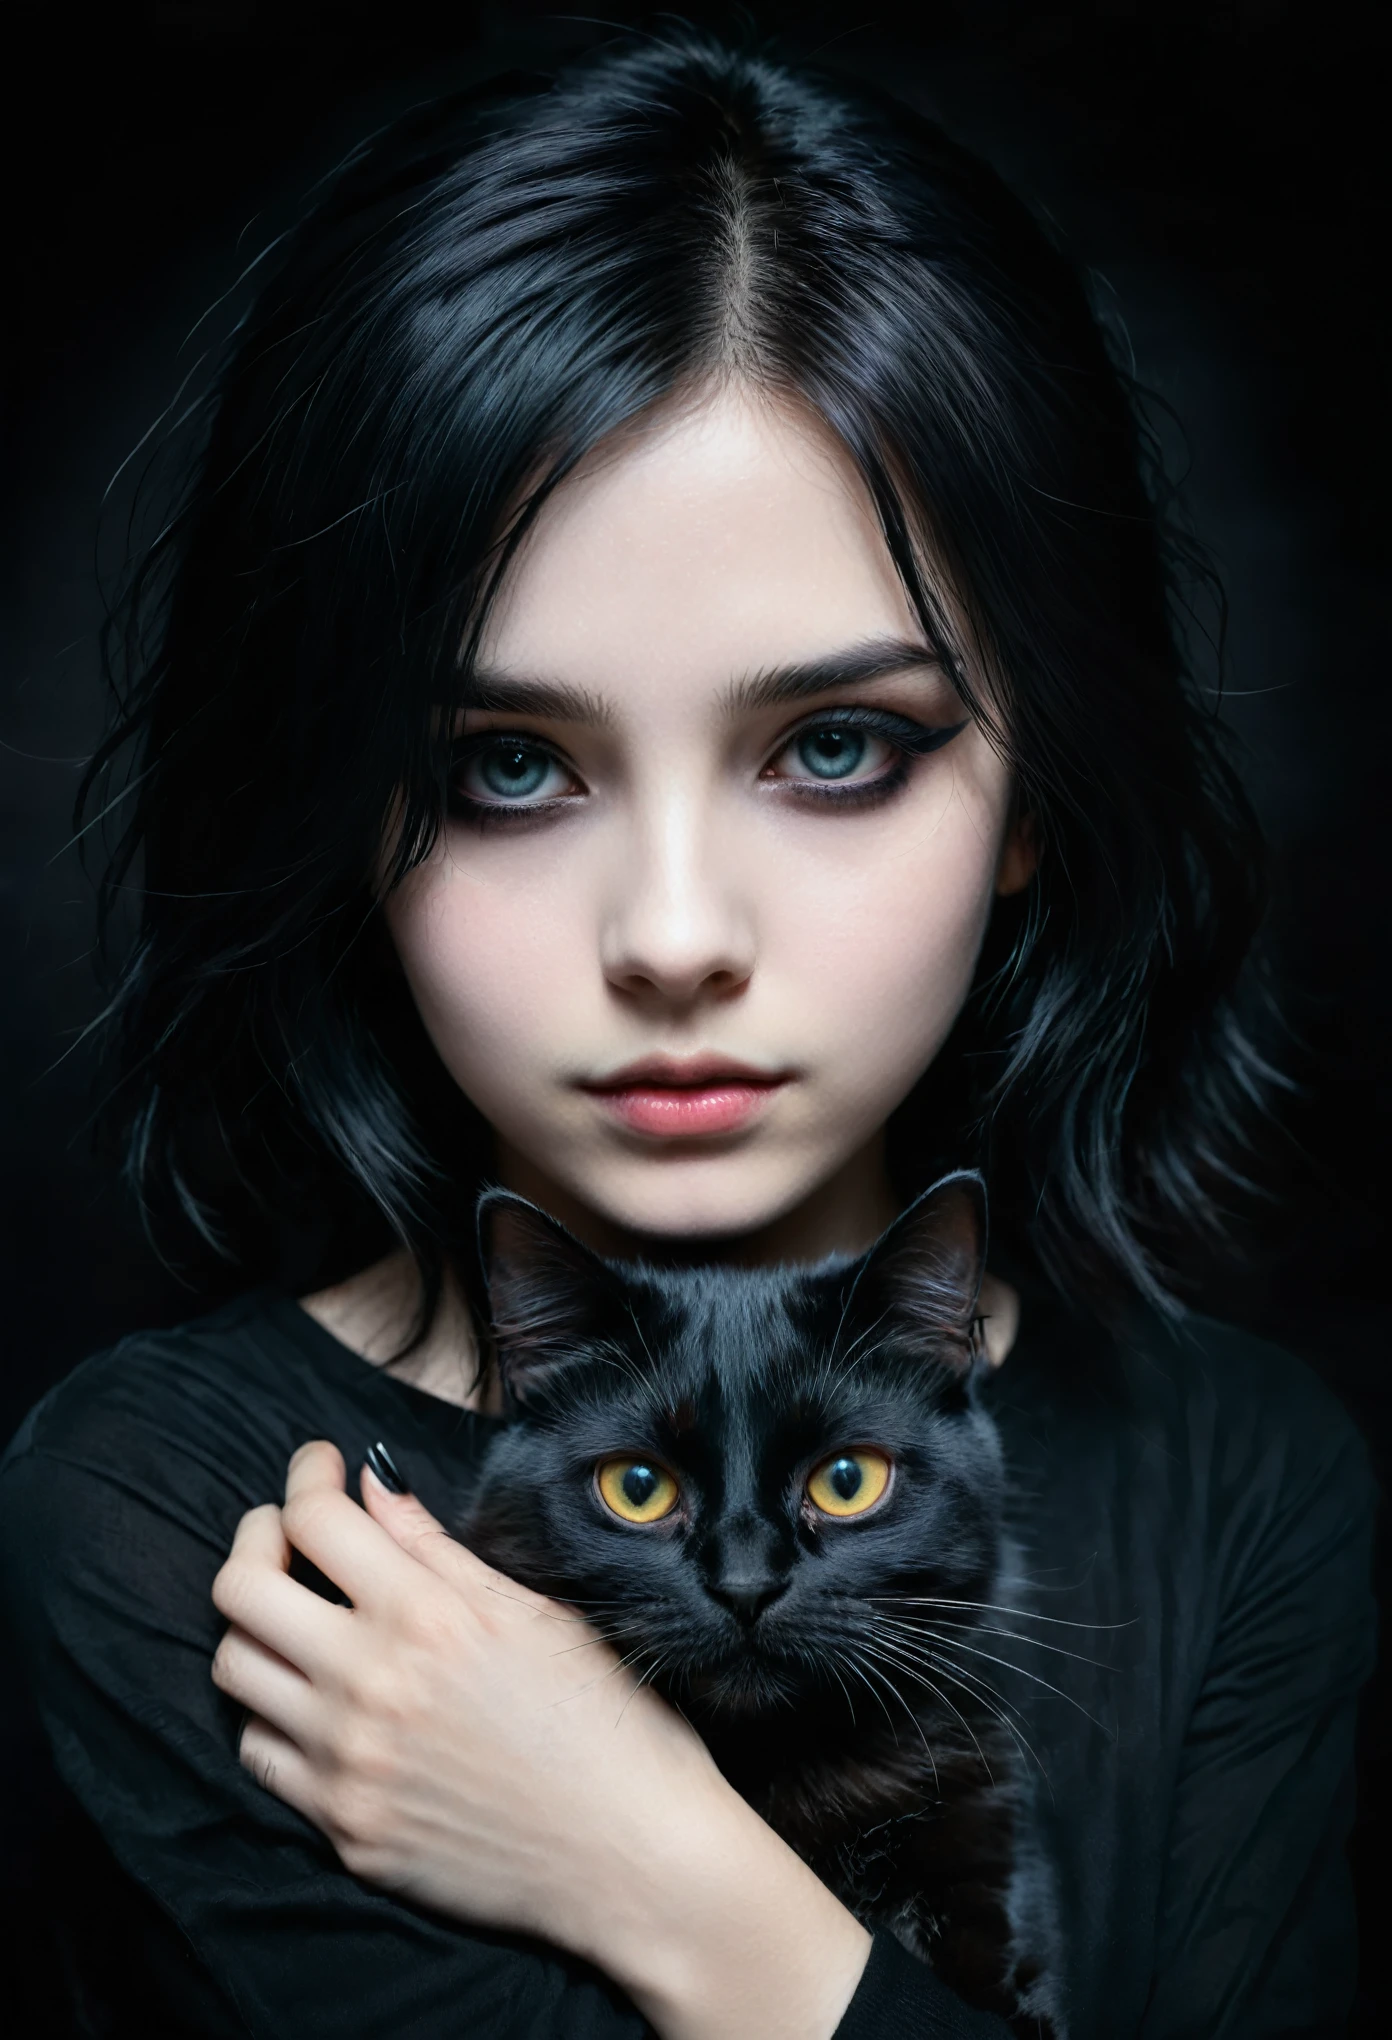 一个 Emo 女孩，手里抱着一只黑猫, 细致的脸部, 深色妆容, 情感表达, 黑色衣服, 深色背景, 明暗对比照明, 電影, 戏剧性, 喜怒无常, 数字绘画